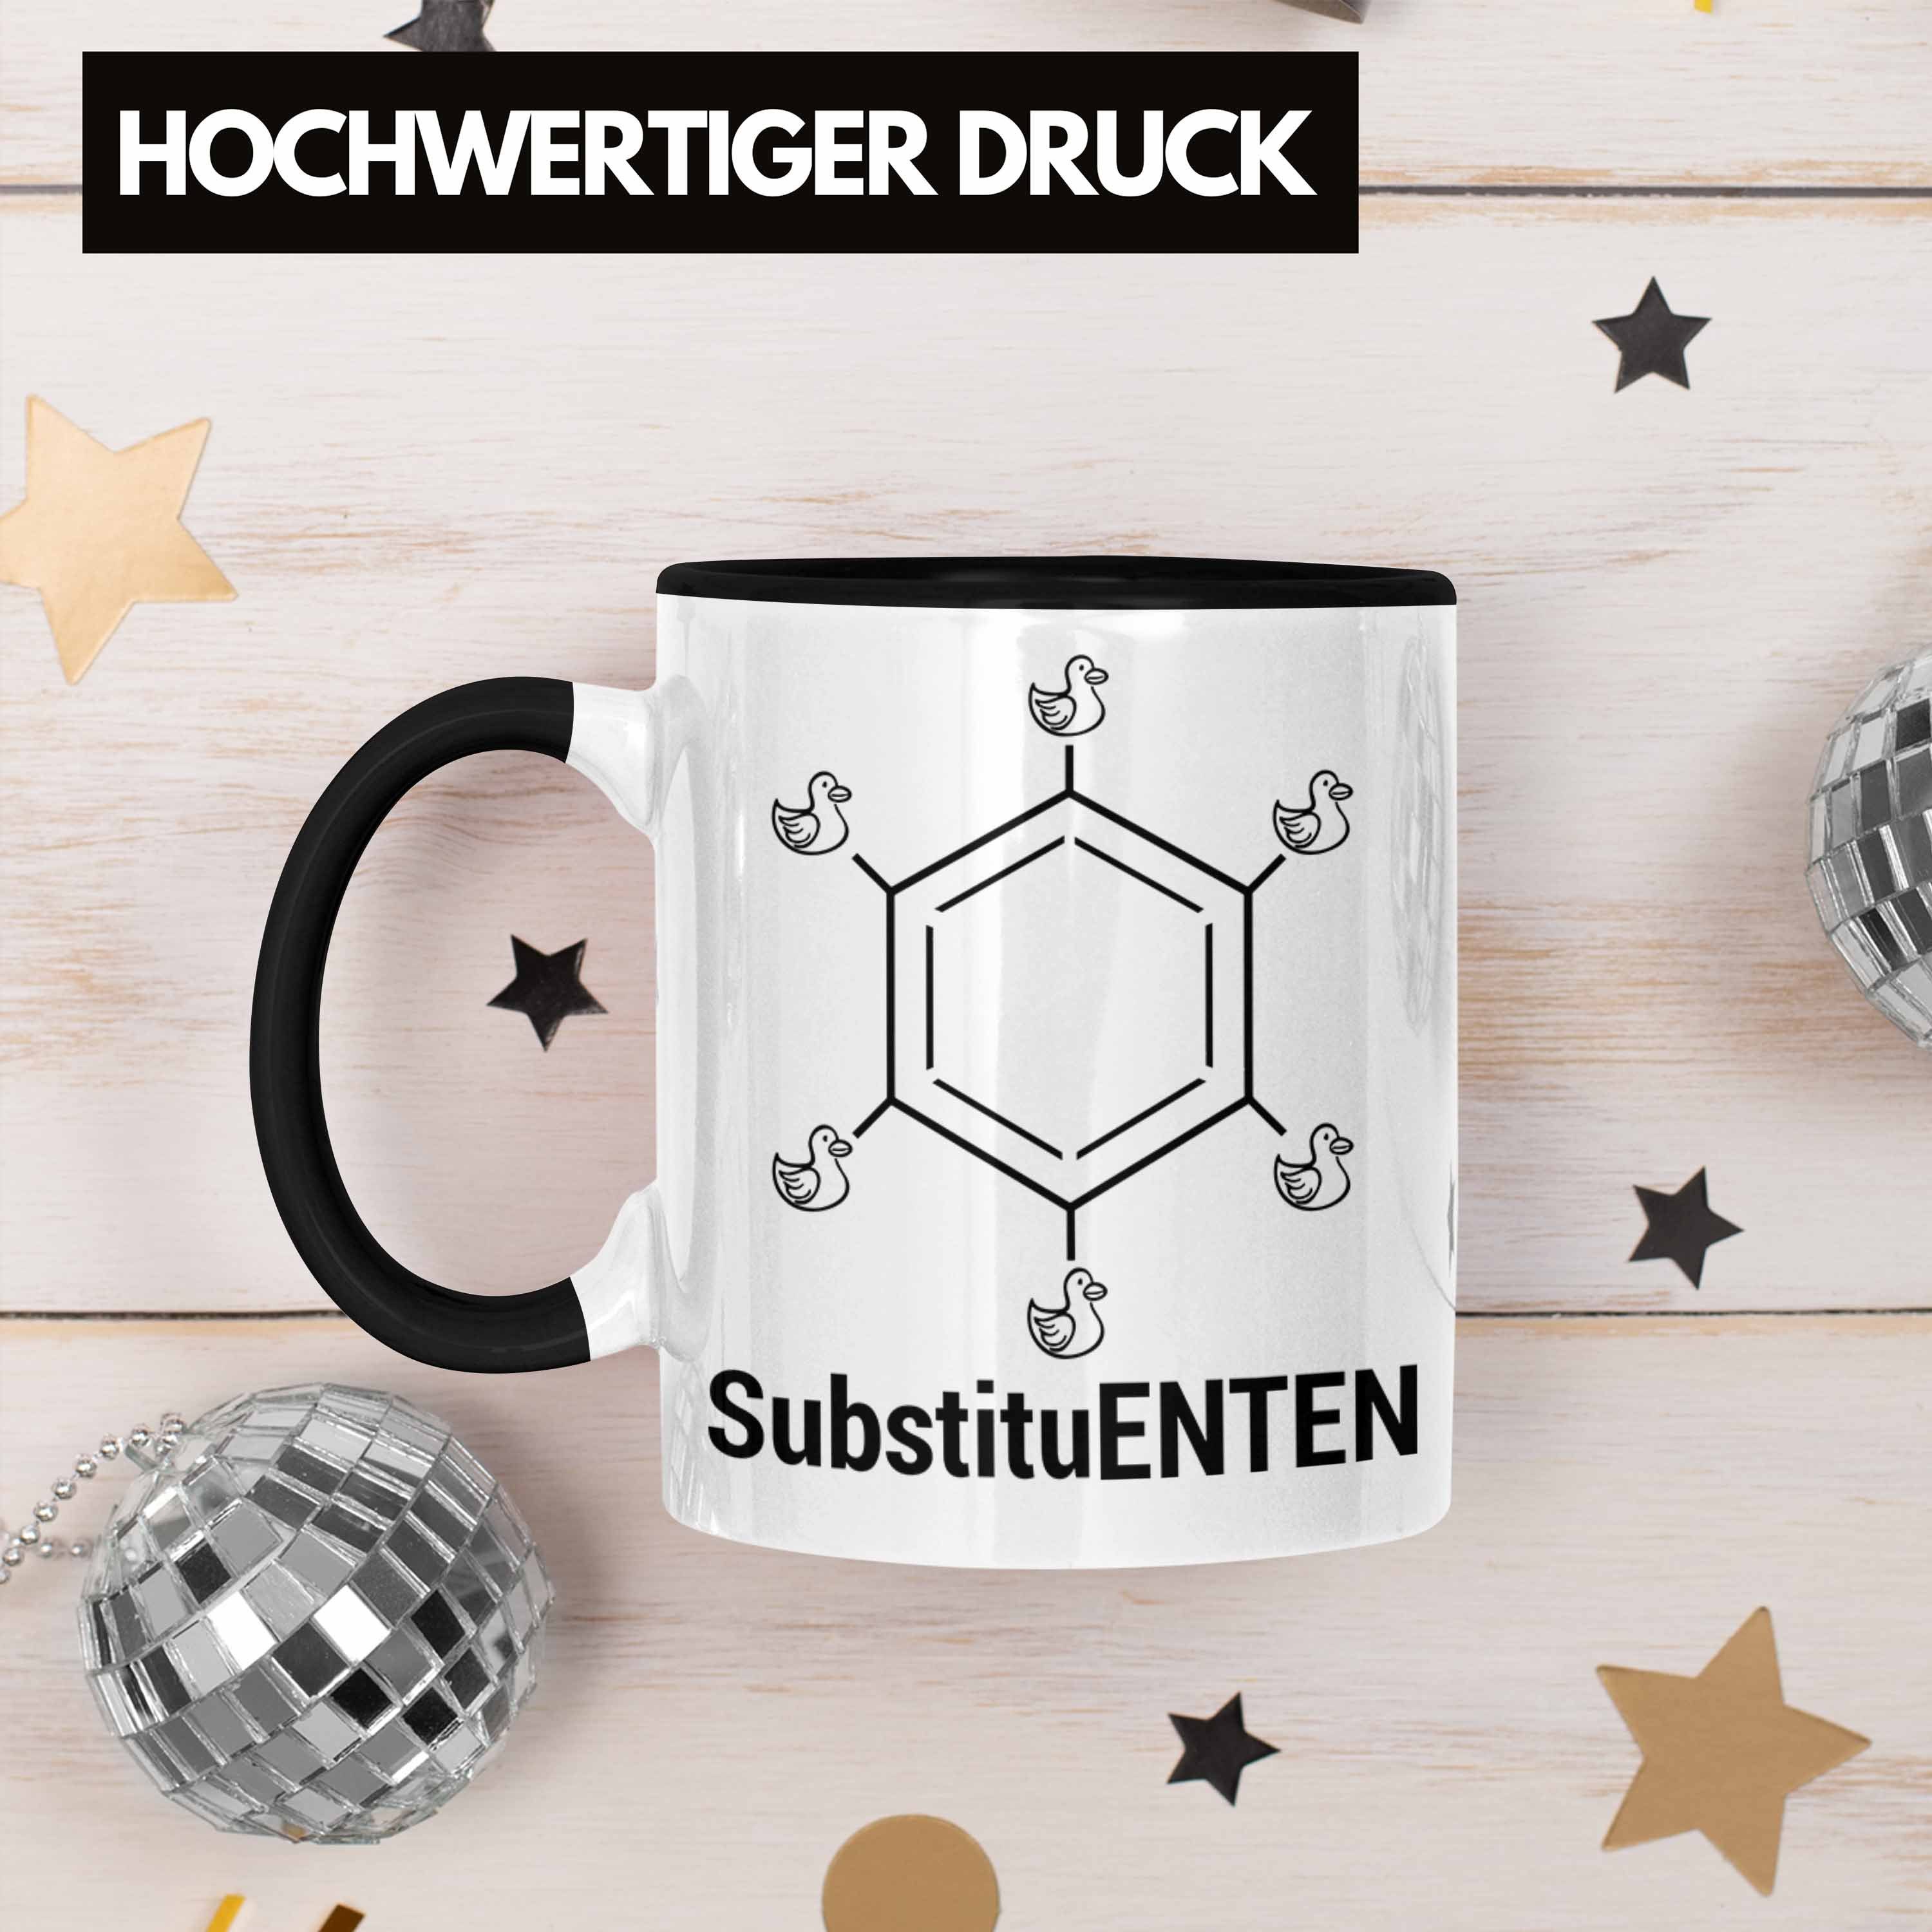 Witz Schwarz Chemie Chemie Kaffee Organische Chemiker Tasse SubstituENTEN Tasse Trendation Ente